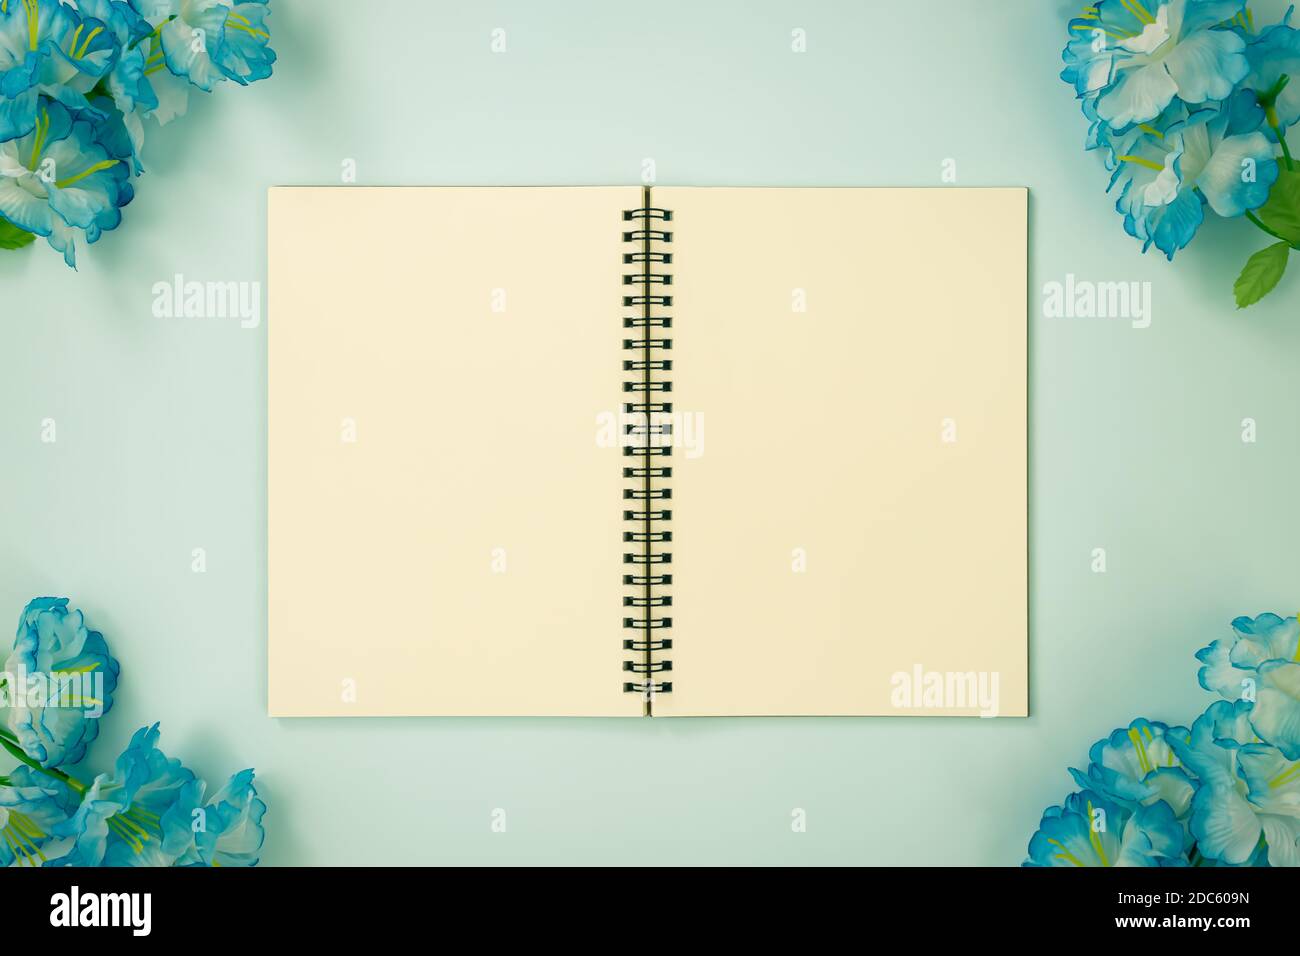 Tischchen Spiral Notizbuch oder Feder Notizbuch Mockup in ungefüttert Tippen Sie auf Mittelrahmen und blaue Blumen an der Ecke ein Blau Pastell minimalistischen Hintergrund in Stockfoto